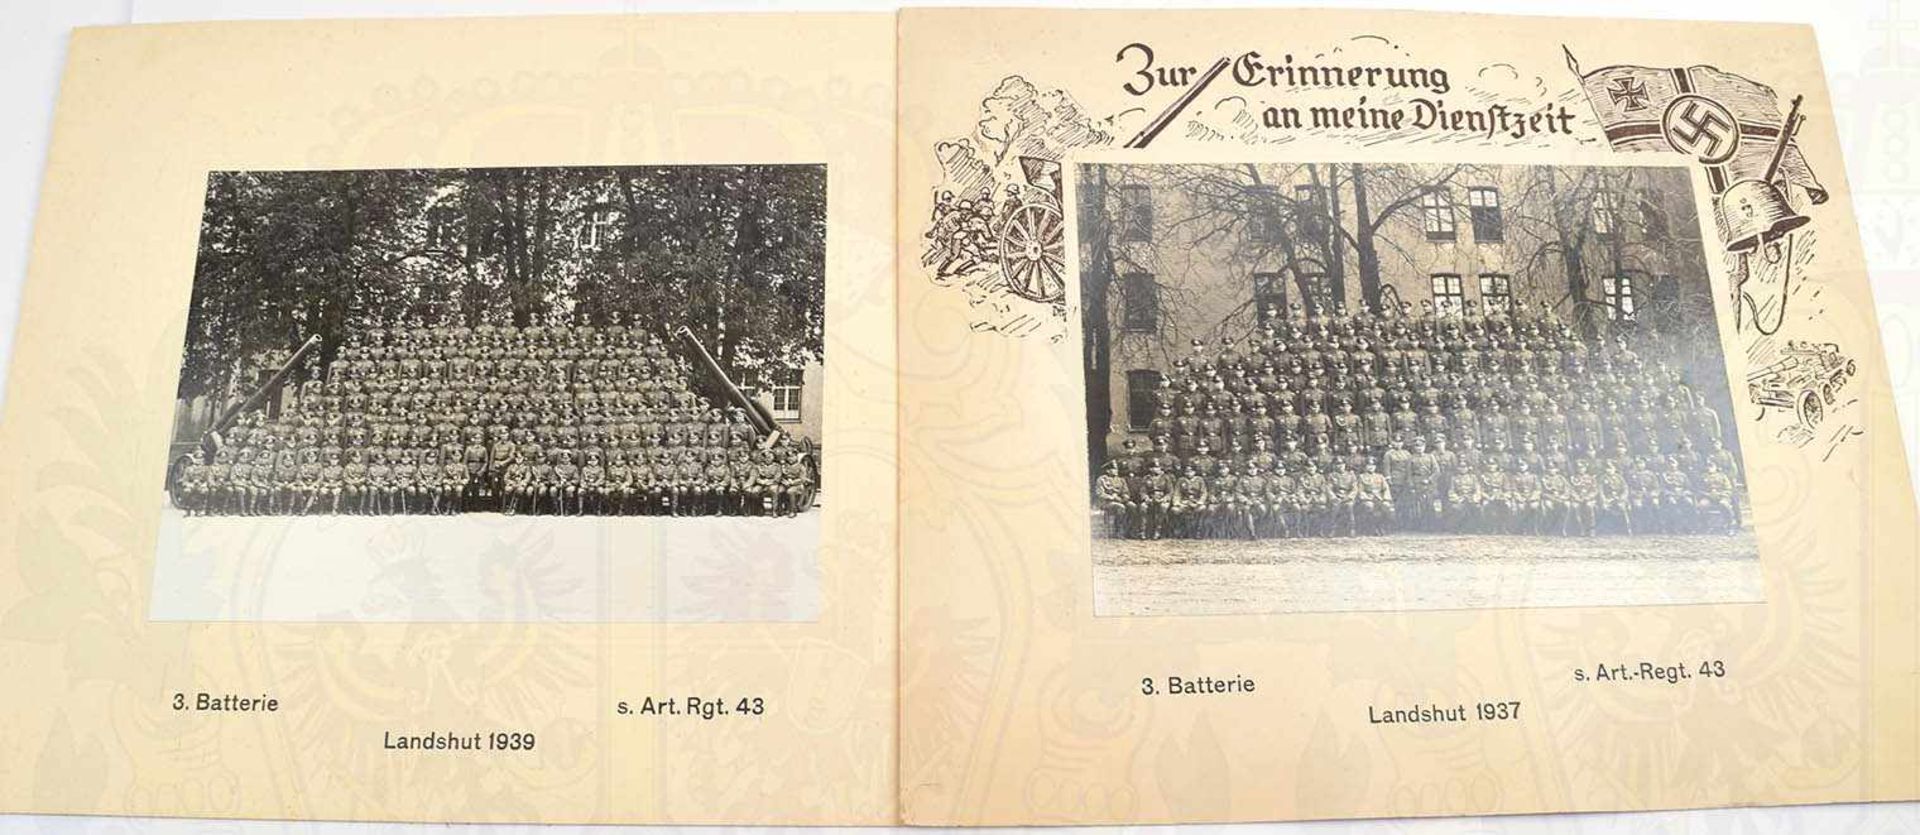 2 DIENSTZEIT-ERINNERUNGSFOTOS, 3. Batterie/schweres Art.-Rgt. 43/Landshut, 1937, Gruppenfotos m.